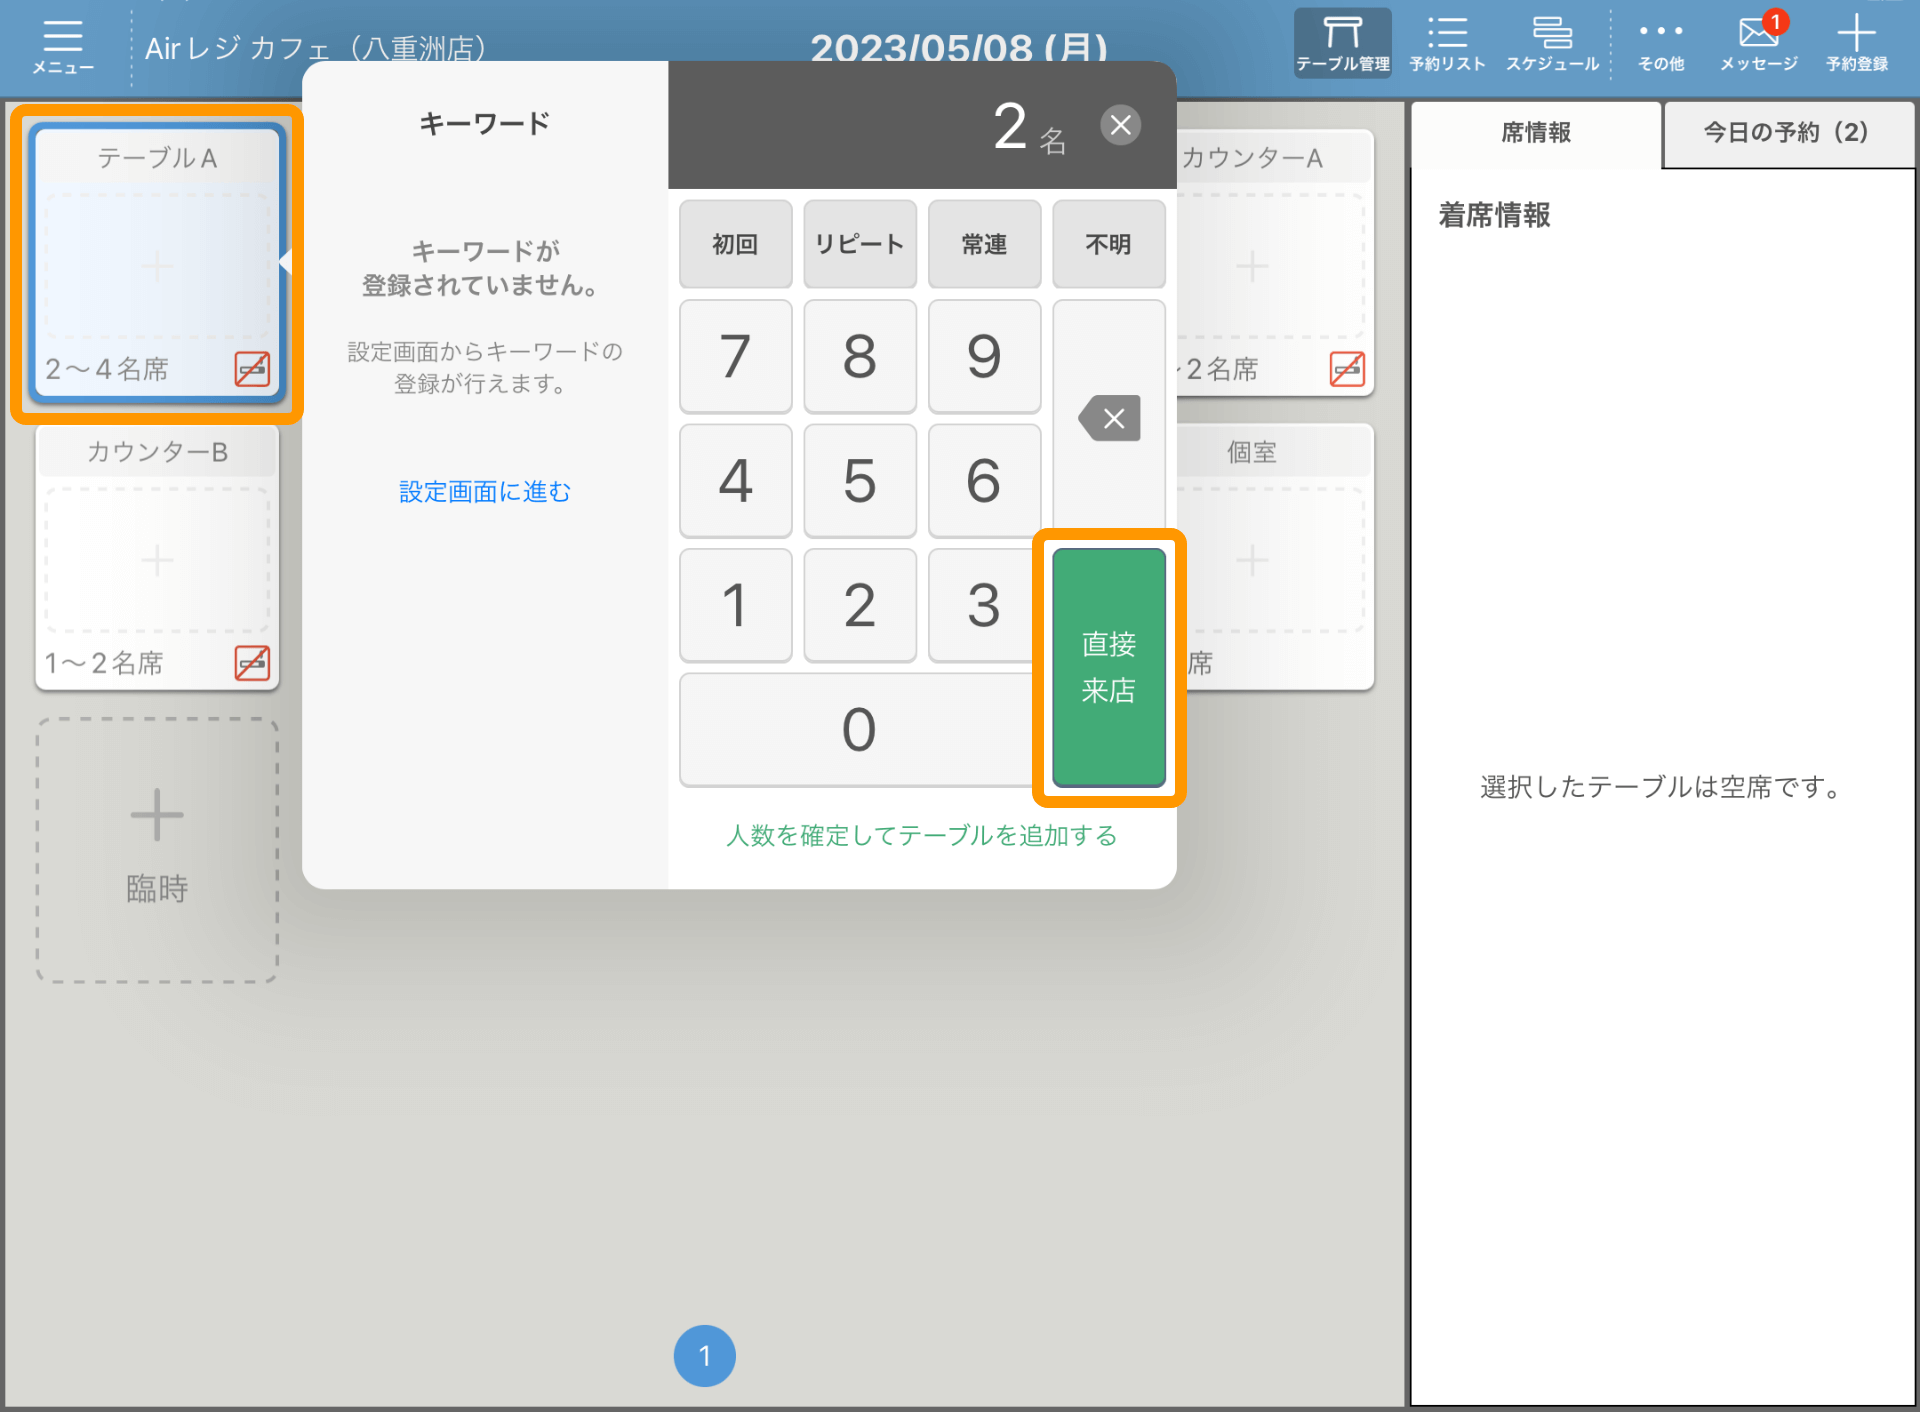 04 レストランボード アプリ テーブル管理画面 直接来店